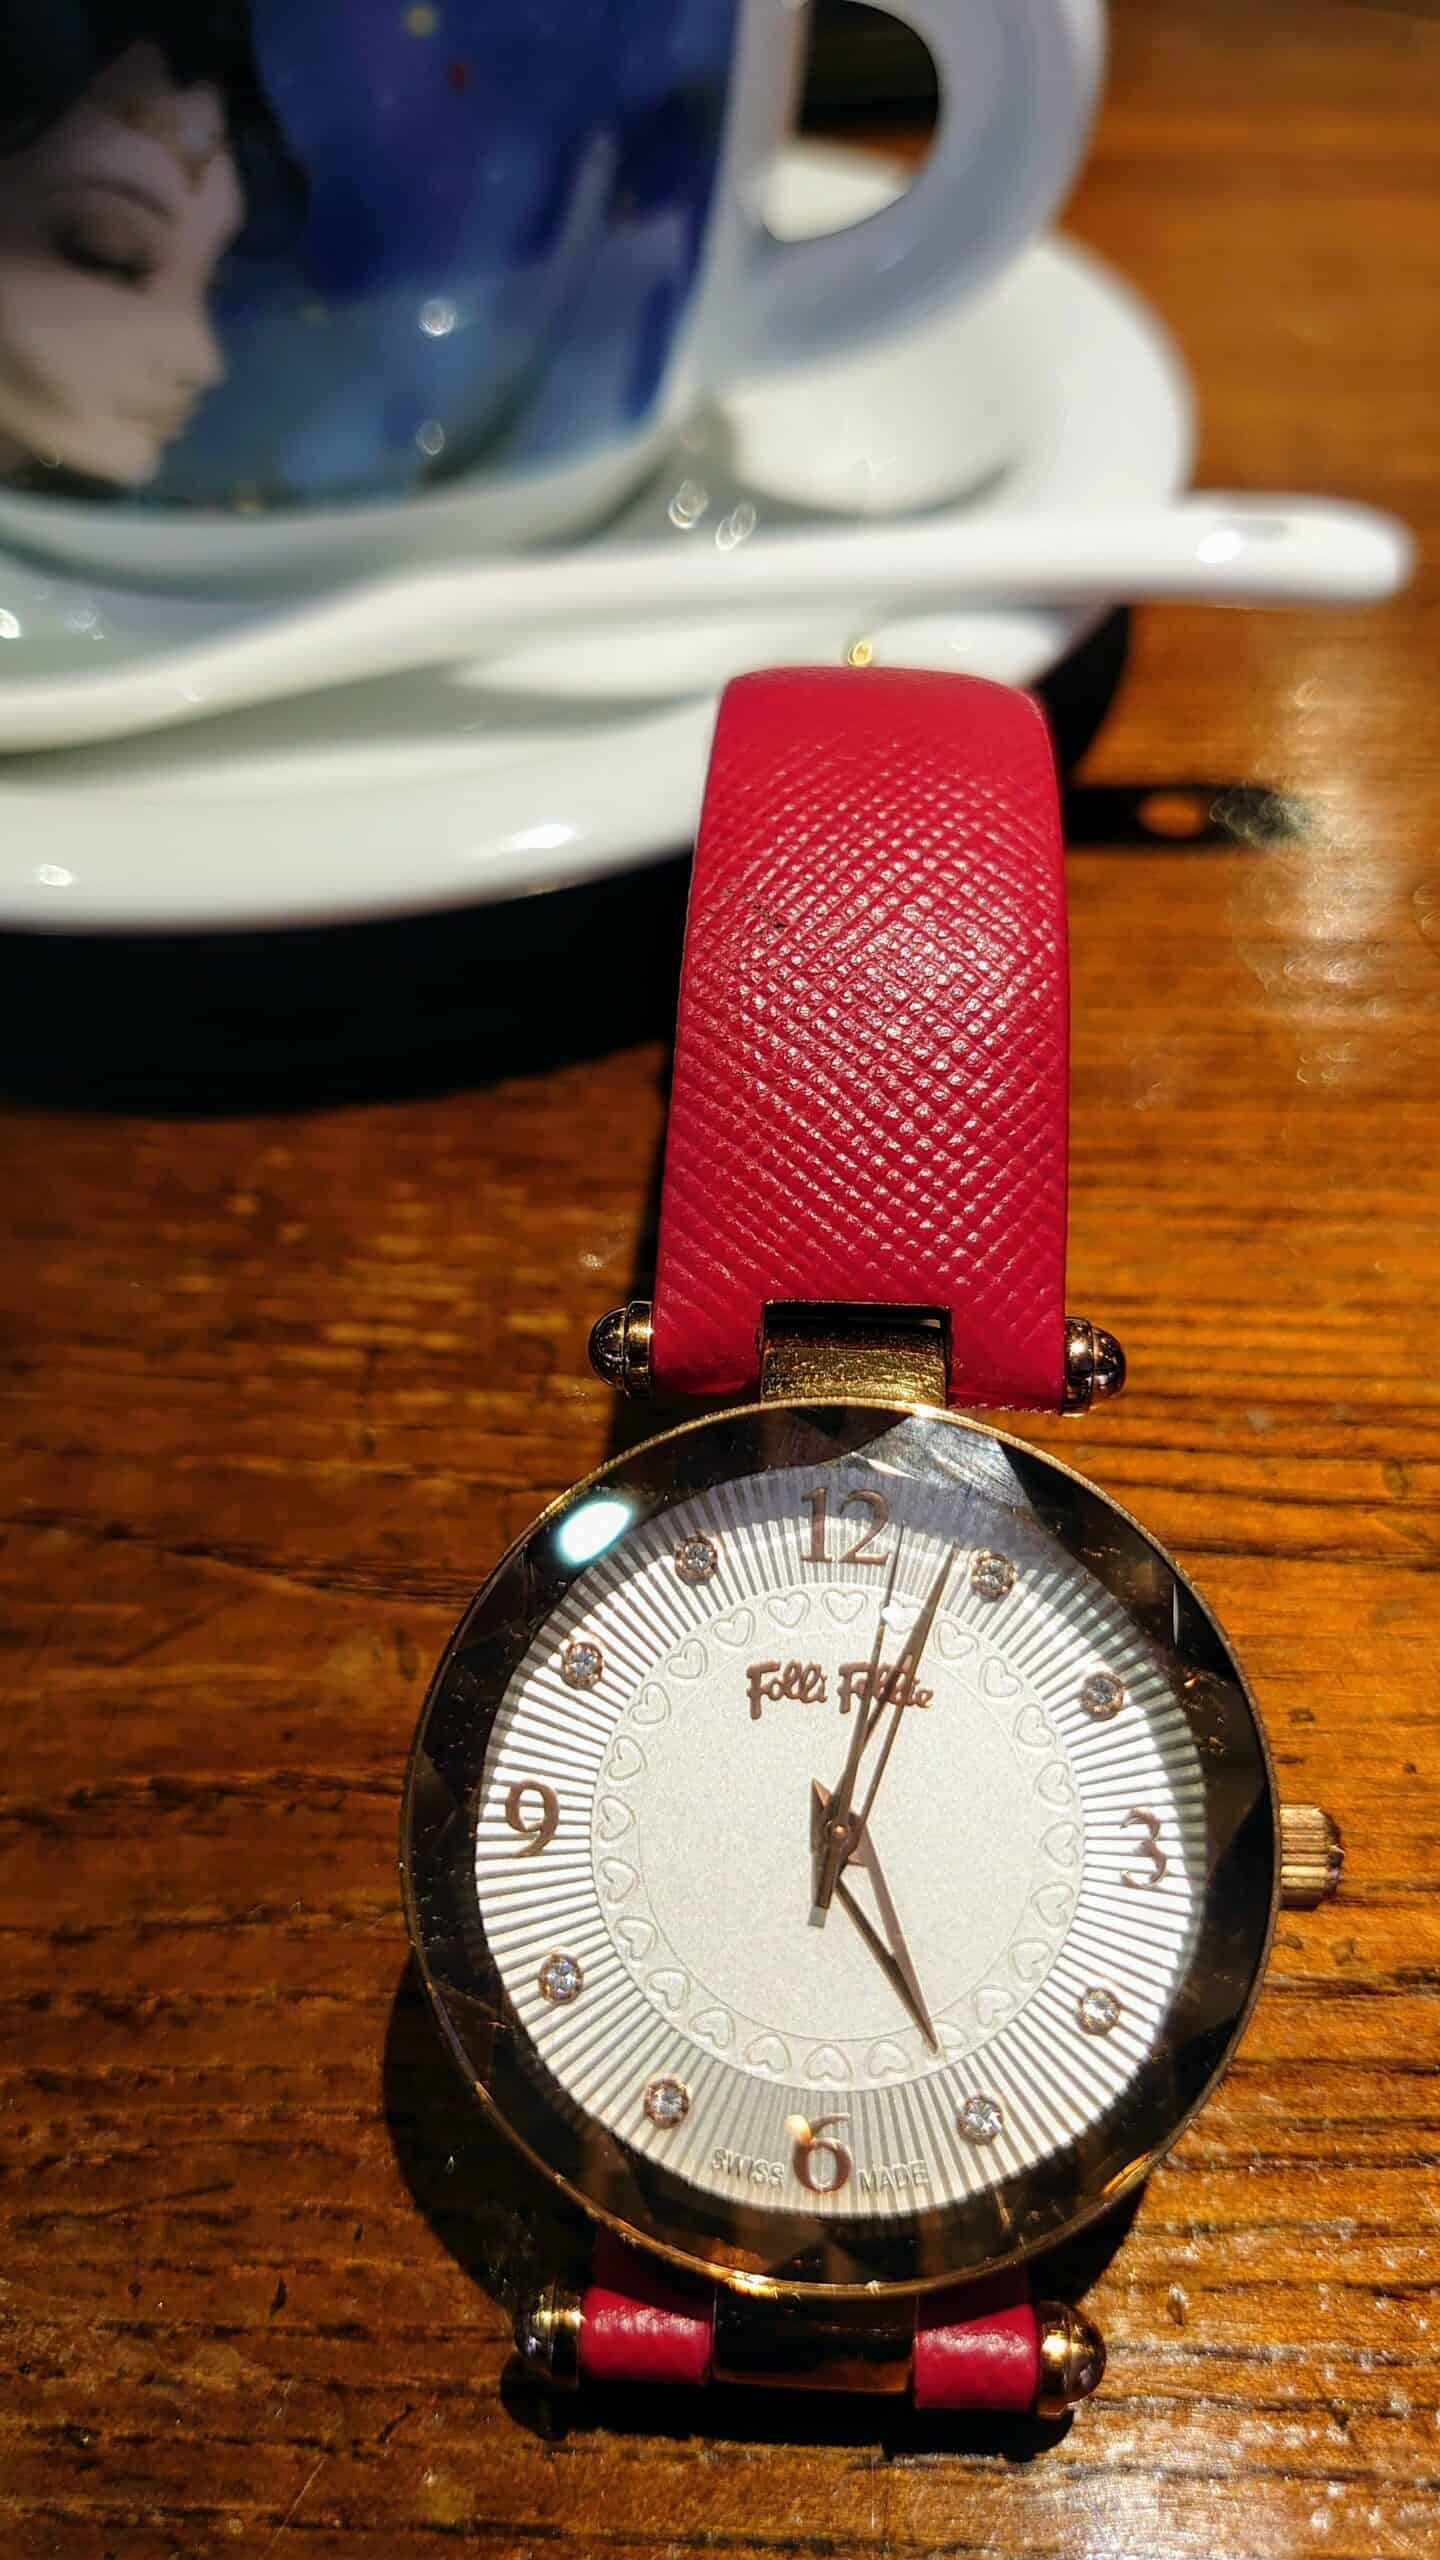 老闆娘的希臘 Folli Follie 手錶 - 紅色真皮錶帶、錶盤與錶框的細膩設計、合宜不粗俗的金色組件。